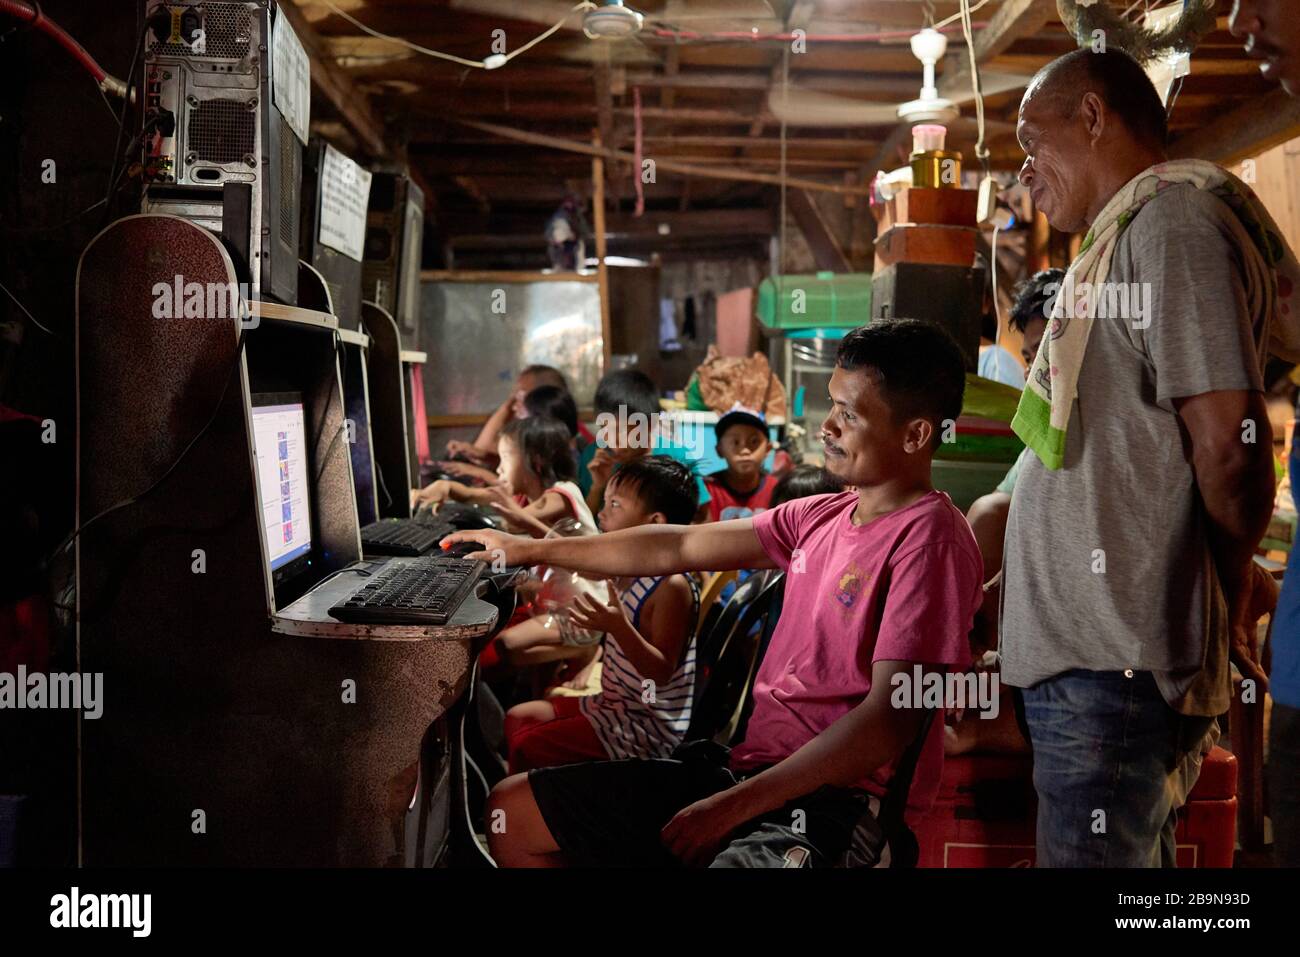 Gruppo di persone che giocano a videogiochi in una sala arcade improvvisata nel mercato pubblico Carbon. Foto Stock